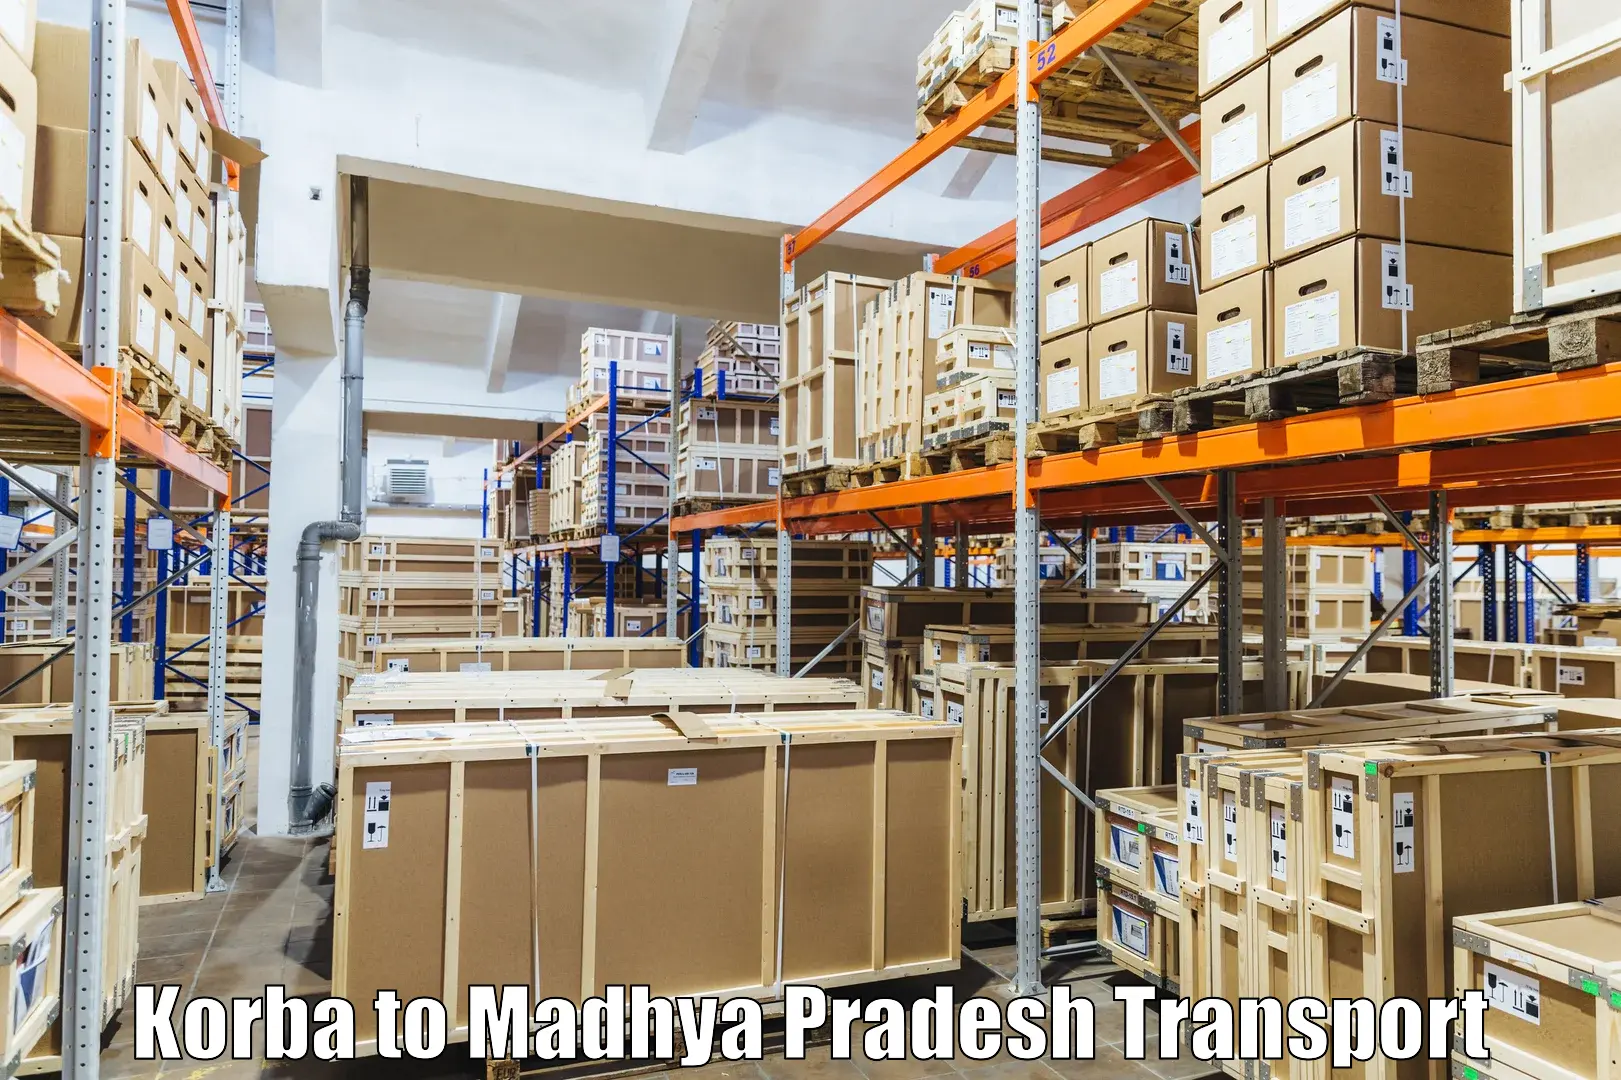 Transportation services Korba to Vidisha